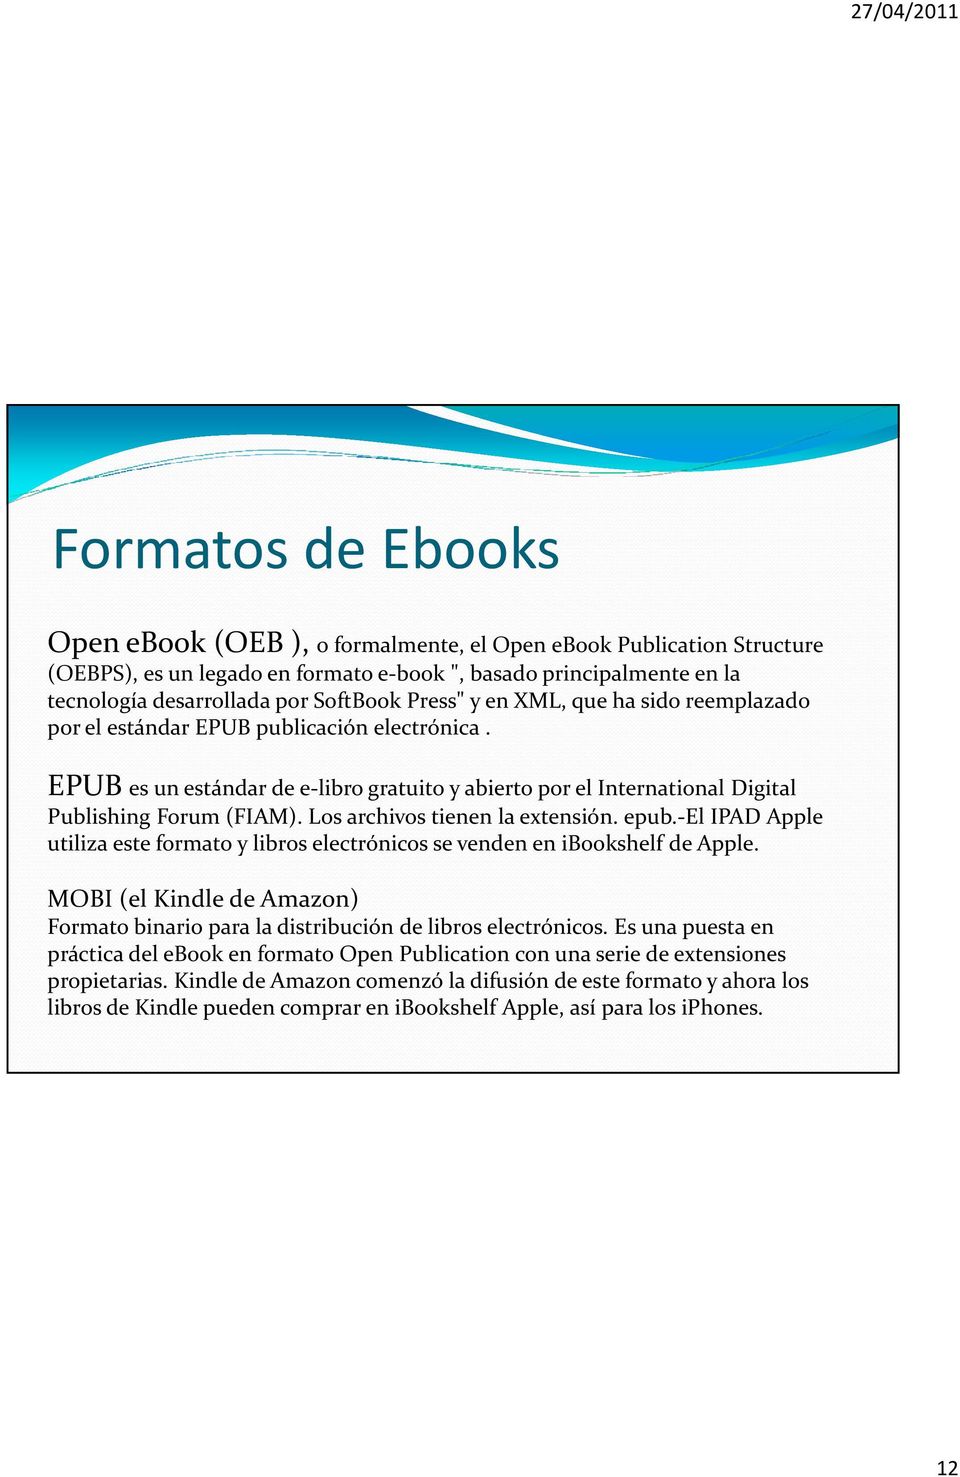 Los archivos tienen la extensión. epub.-el IPAD Apple utiliza este formato y libros electrónicos se venden en ibookshelf de Apple.